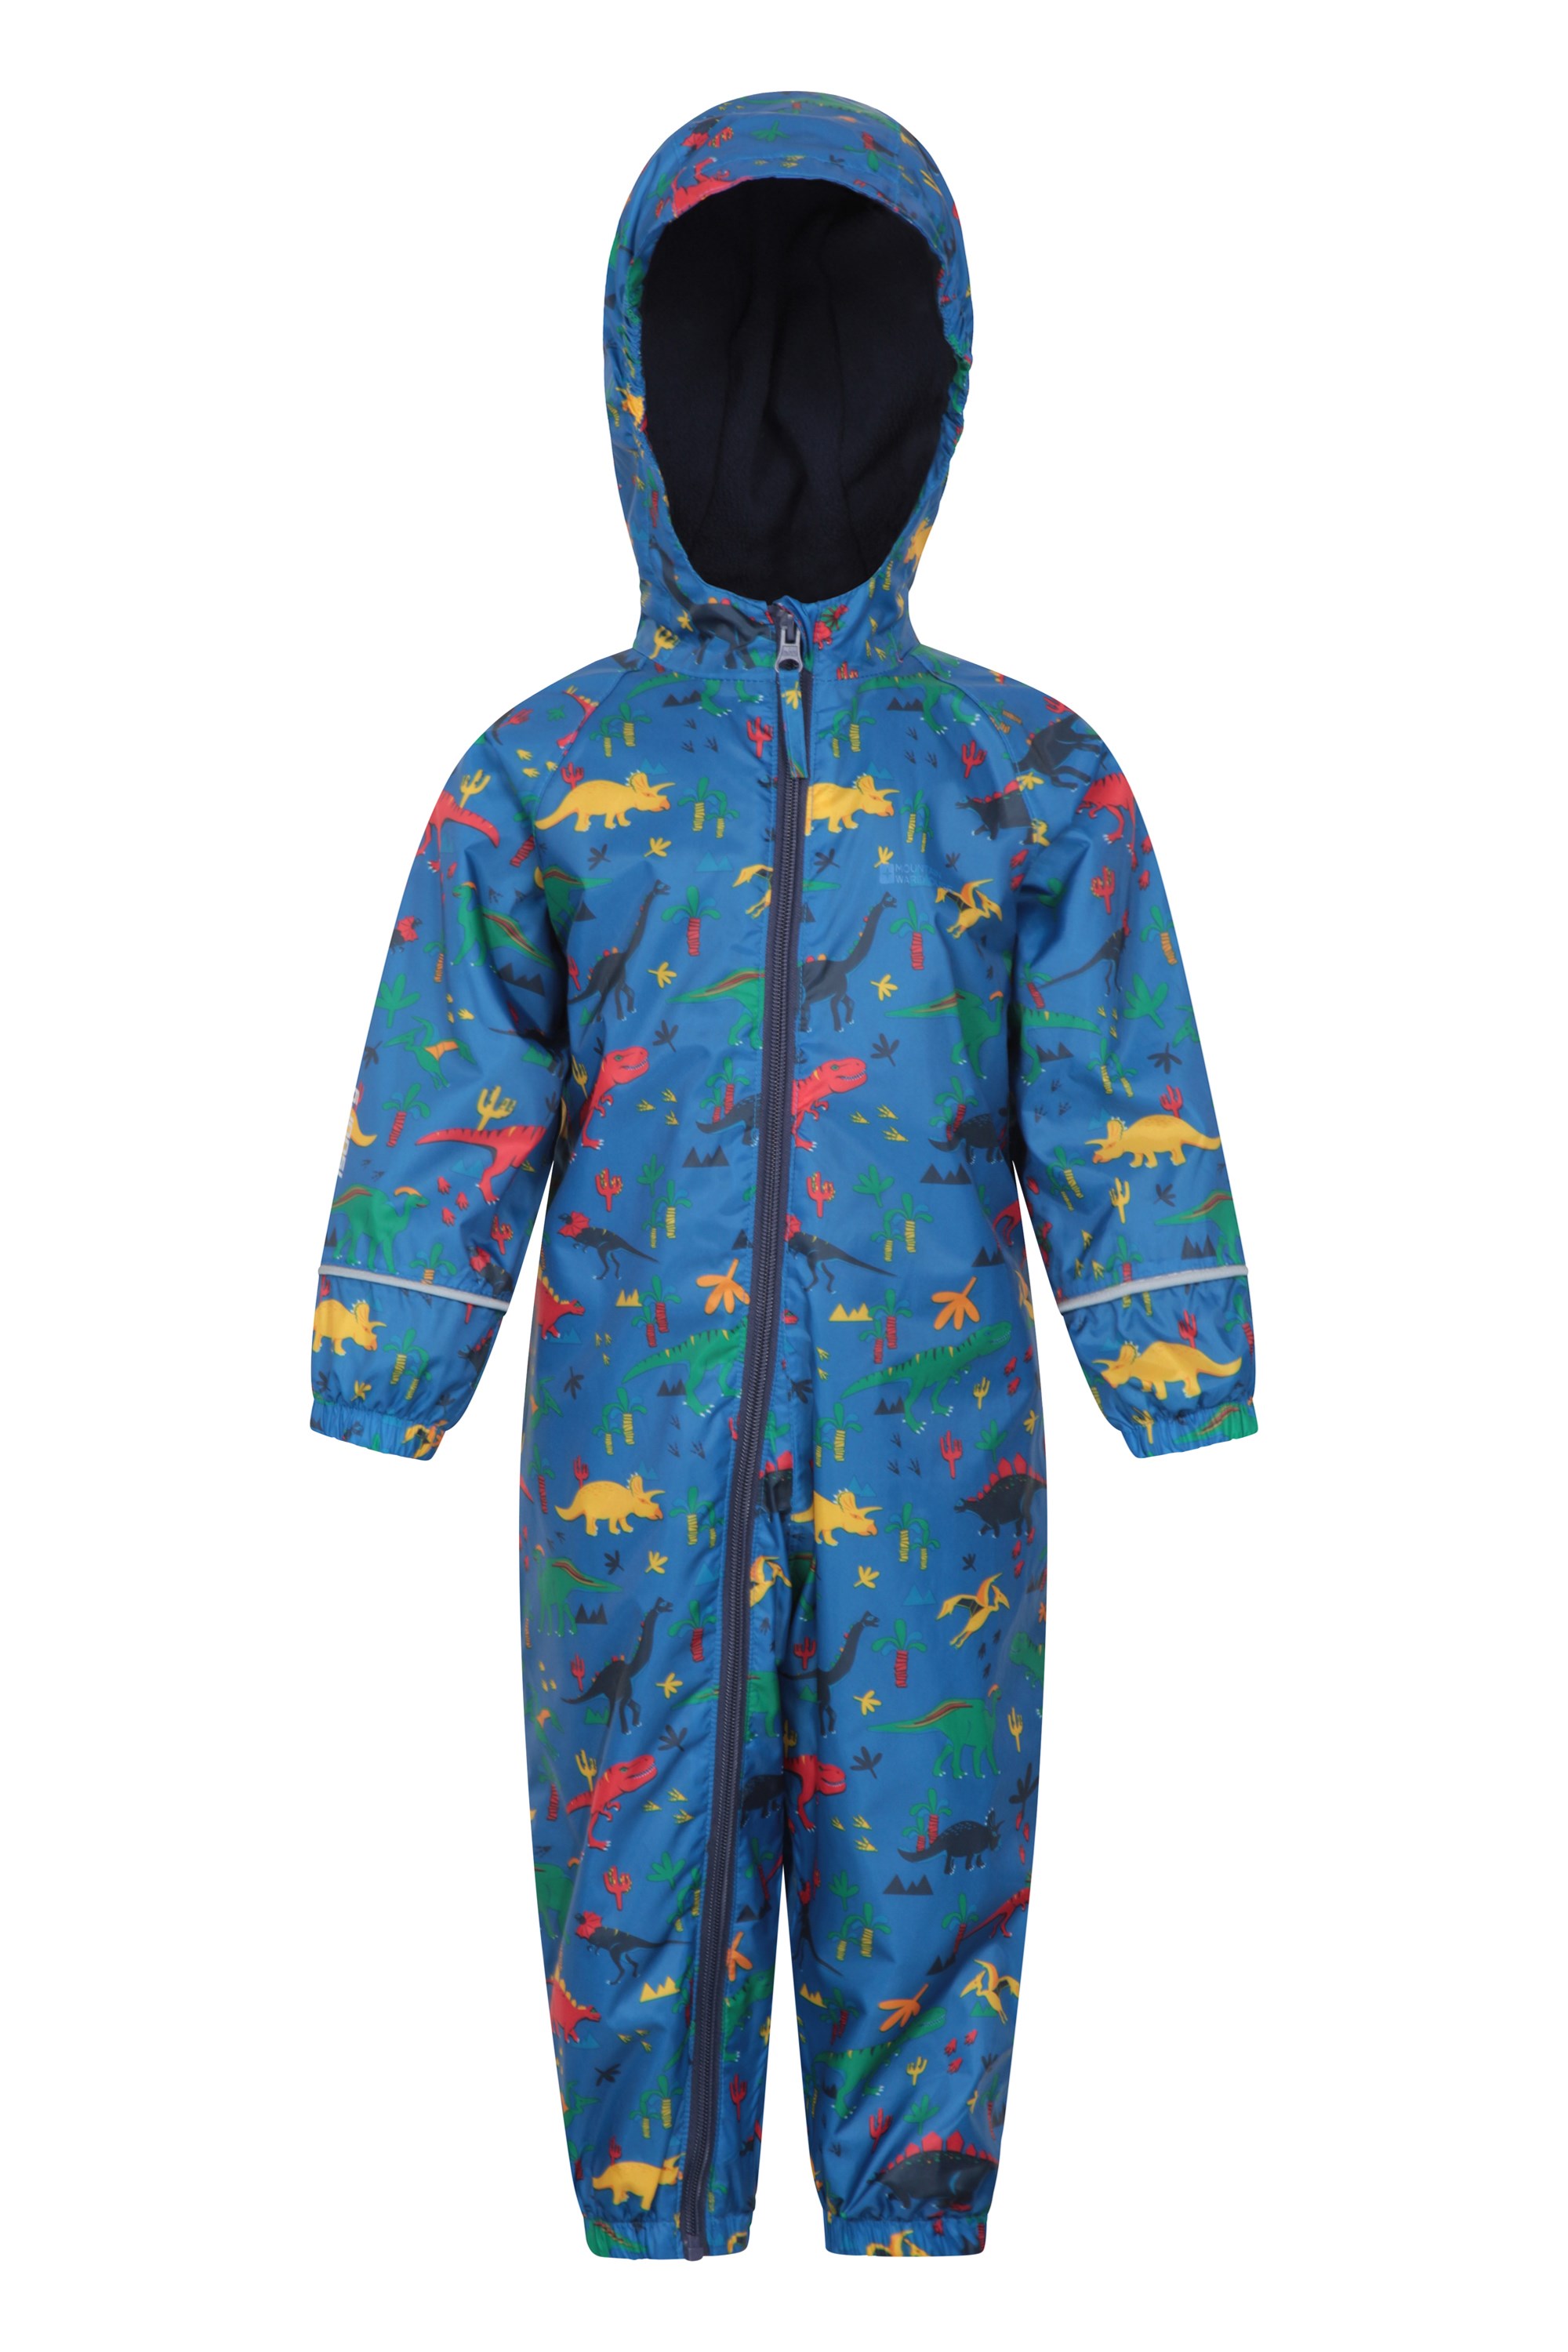 Stonz Rain Suit Muddy Buddy Waterproof Coverall for Baby Toddler Girl Boy Rainsuit Rain Coat 